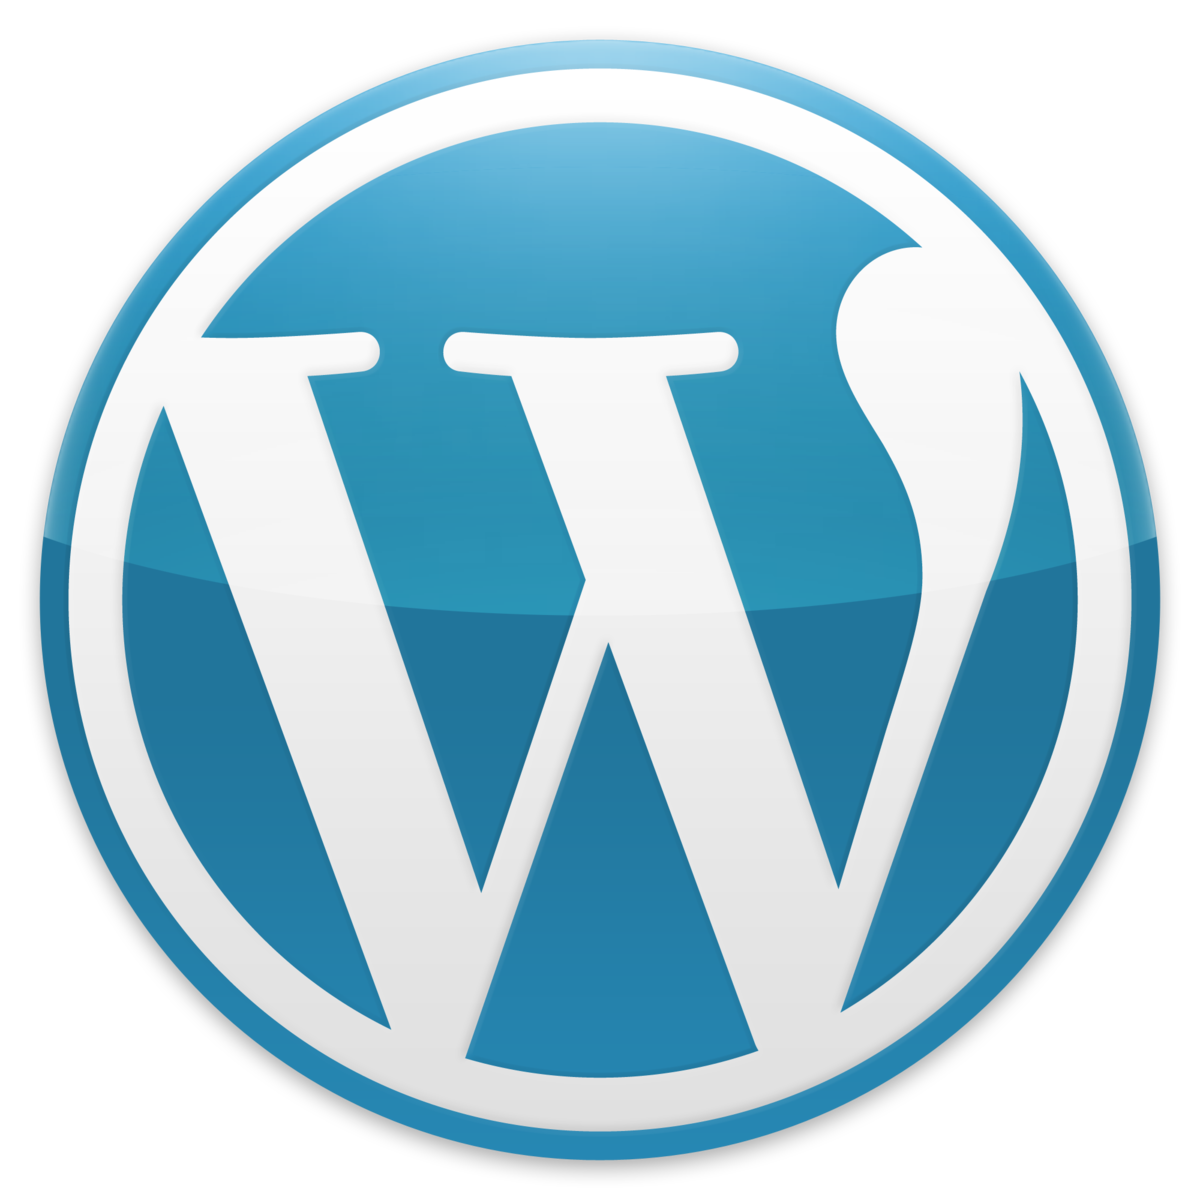 WordPress as a service